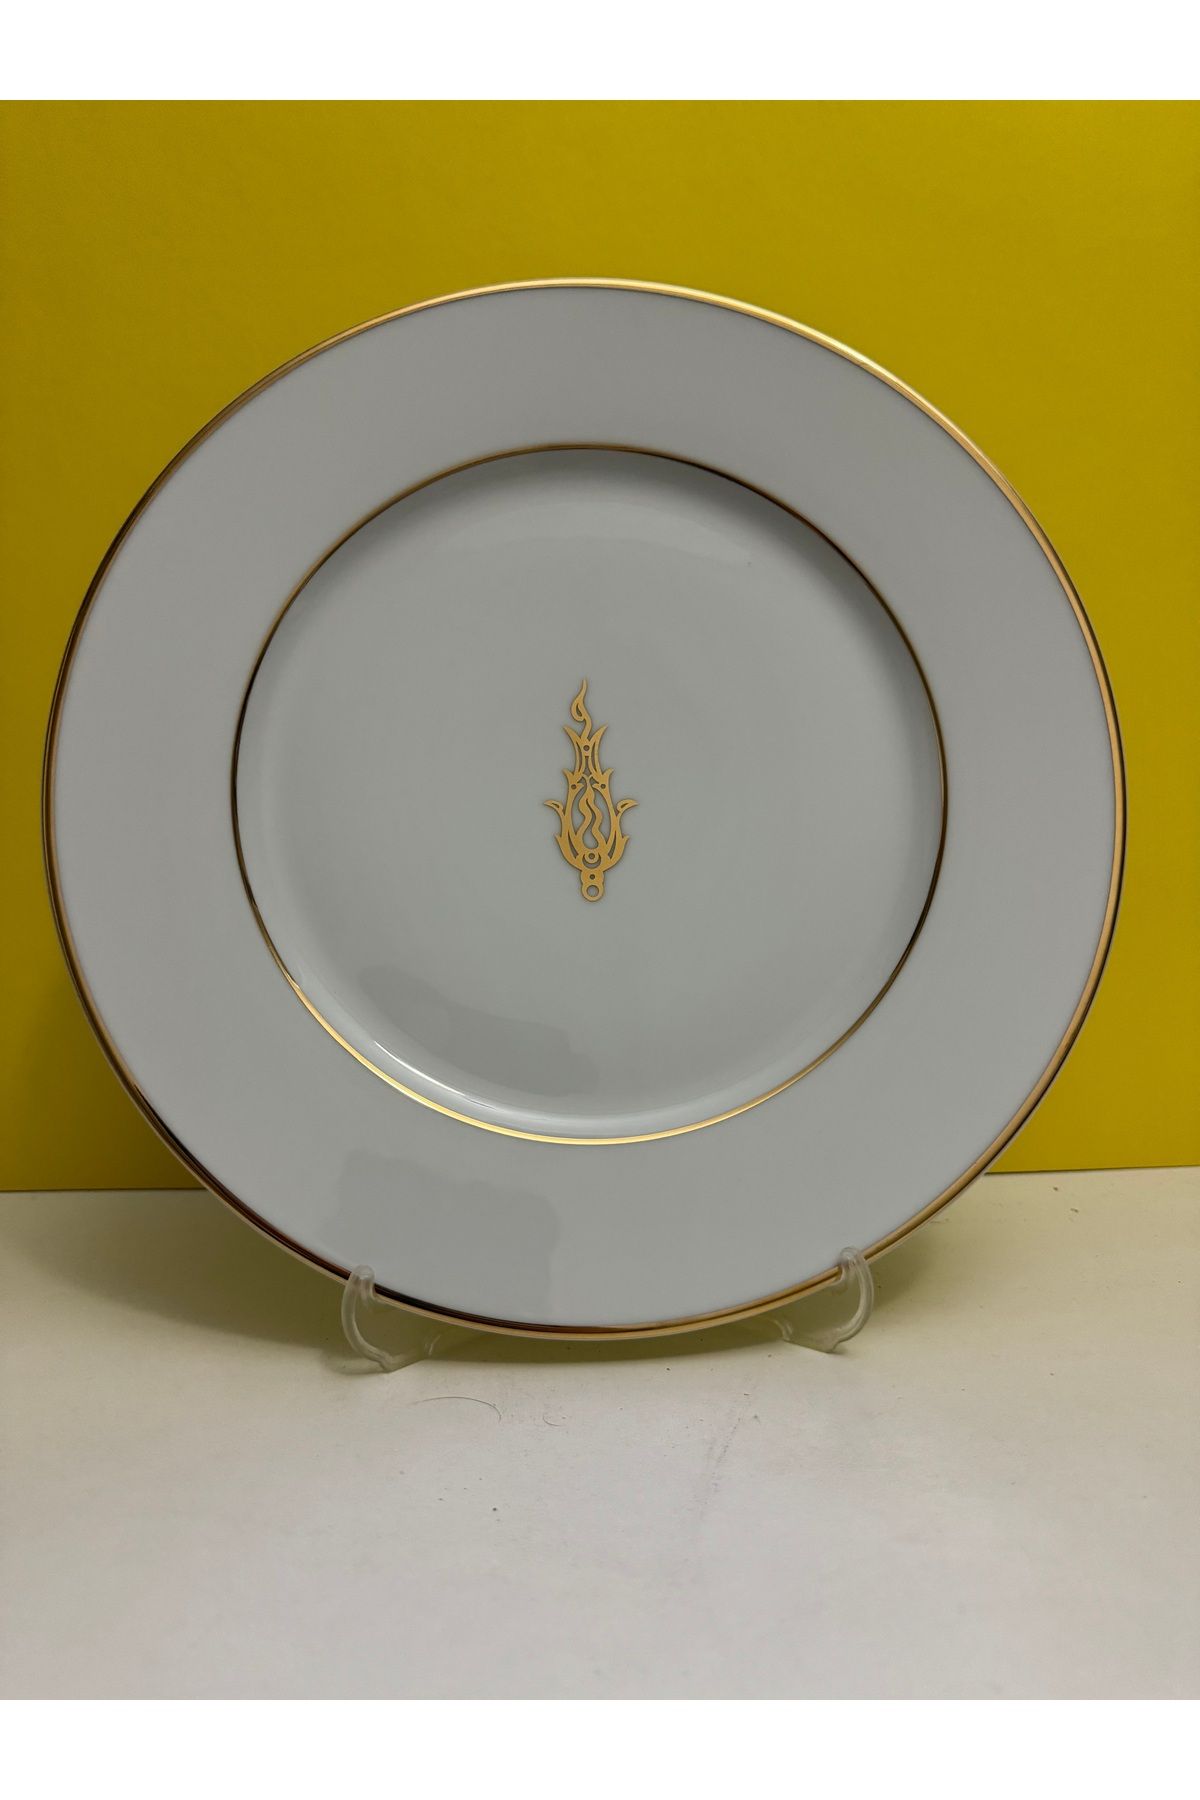 Kütahya Porselen Corner Serisi Porselen Osmanlı Desen Altın Yaldızlı Supla Servis Tabağı 32 Cm